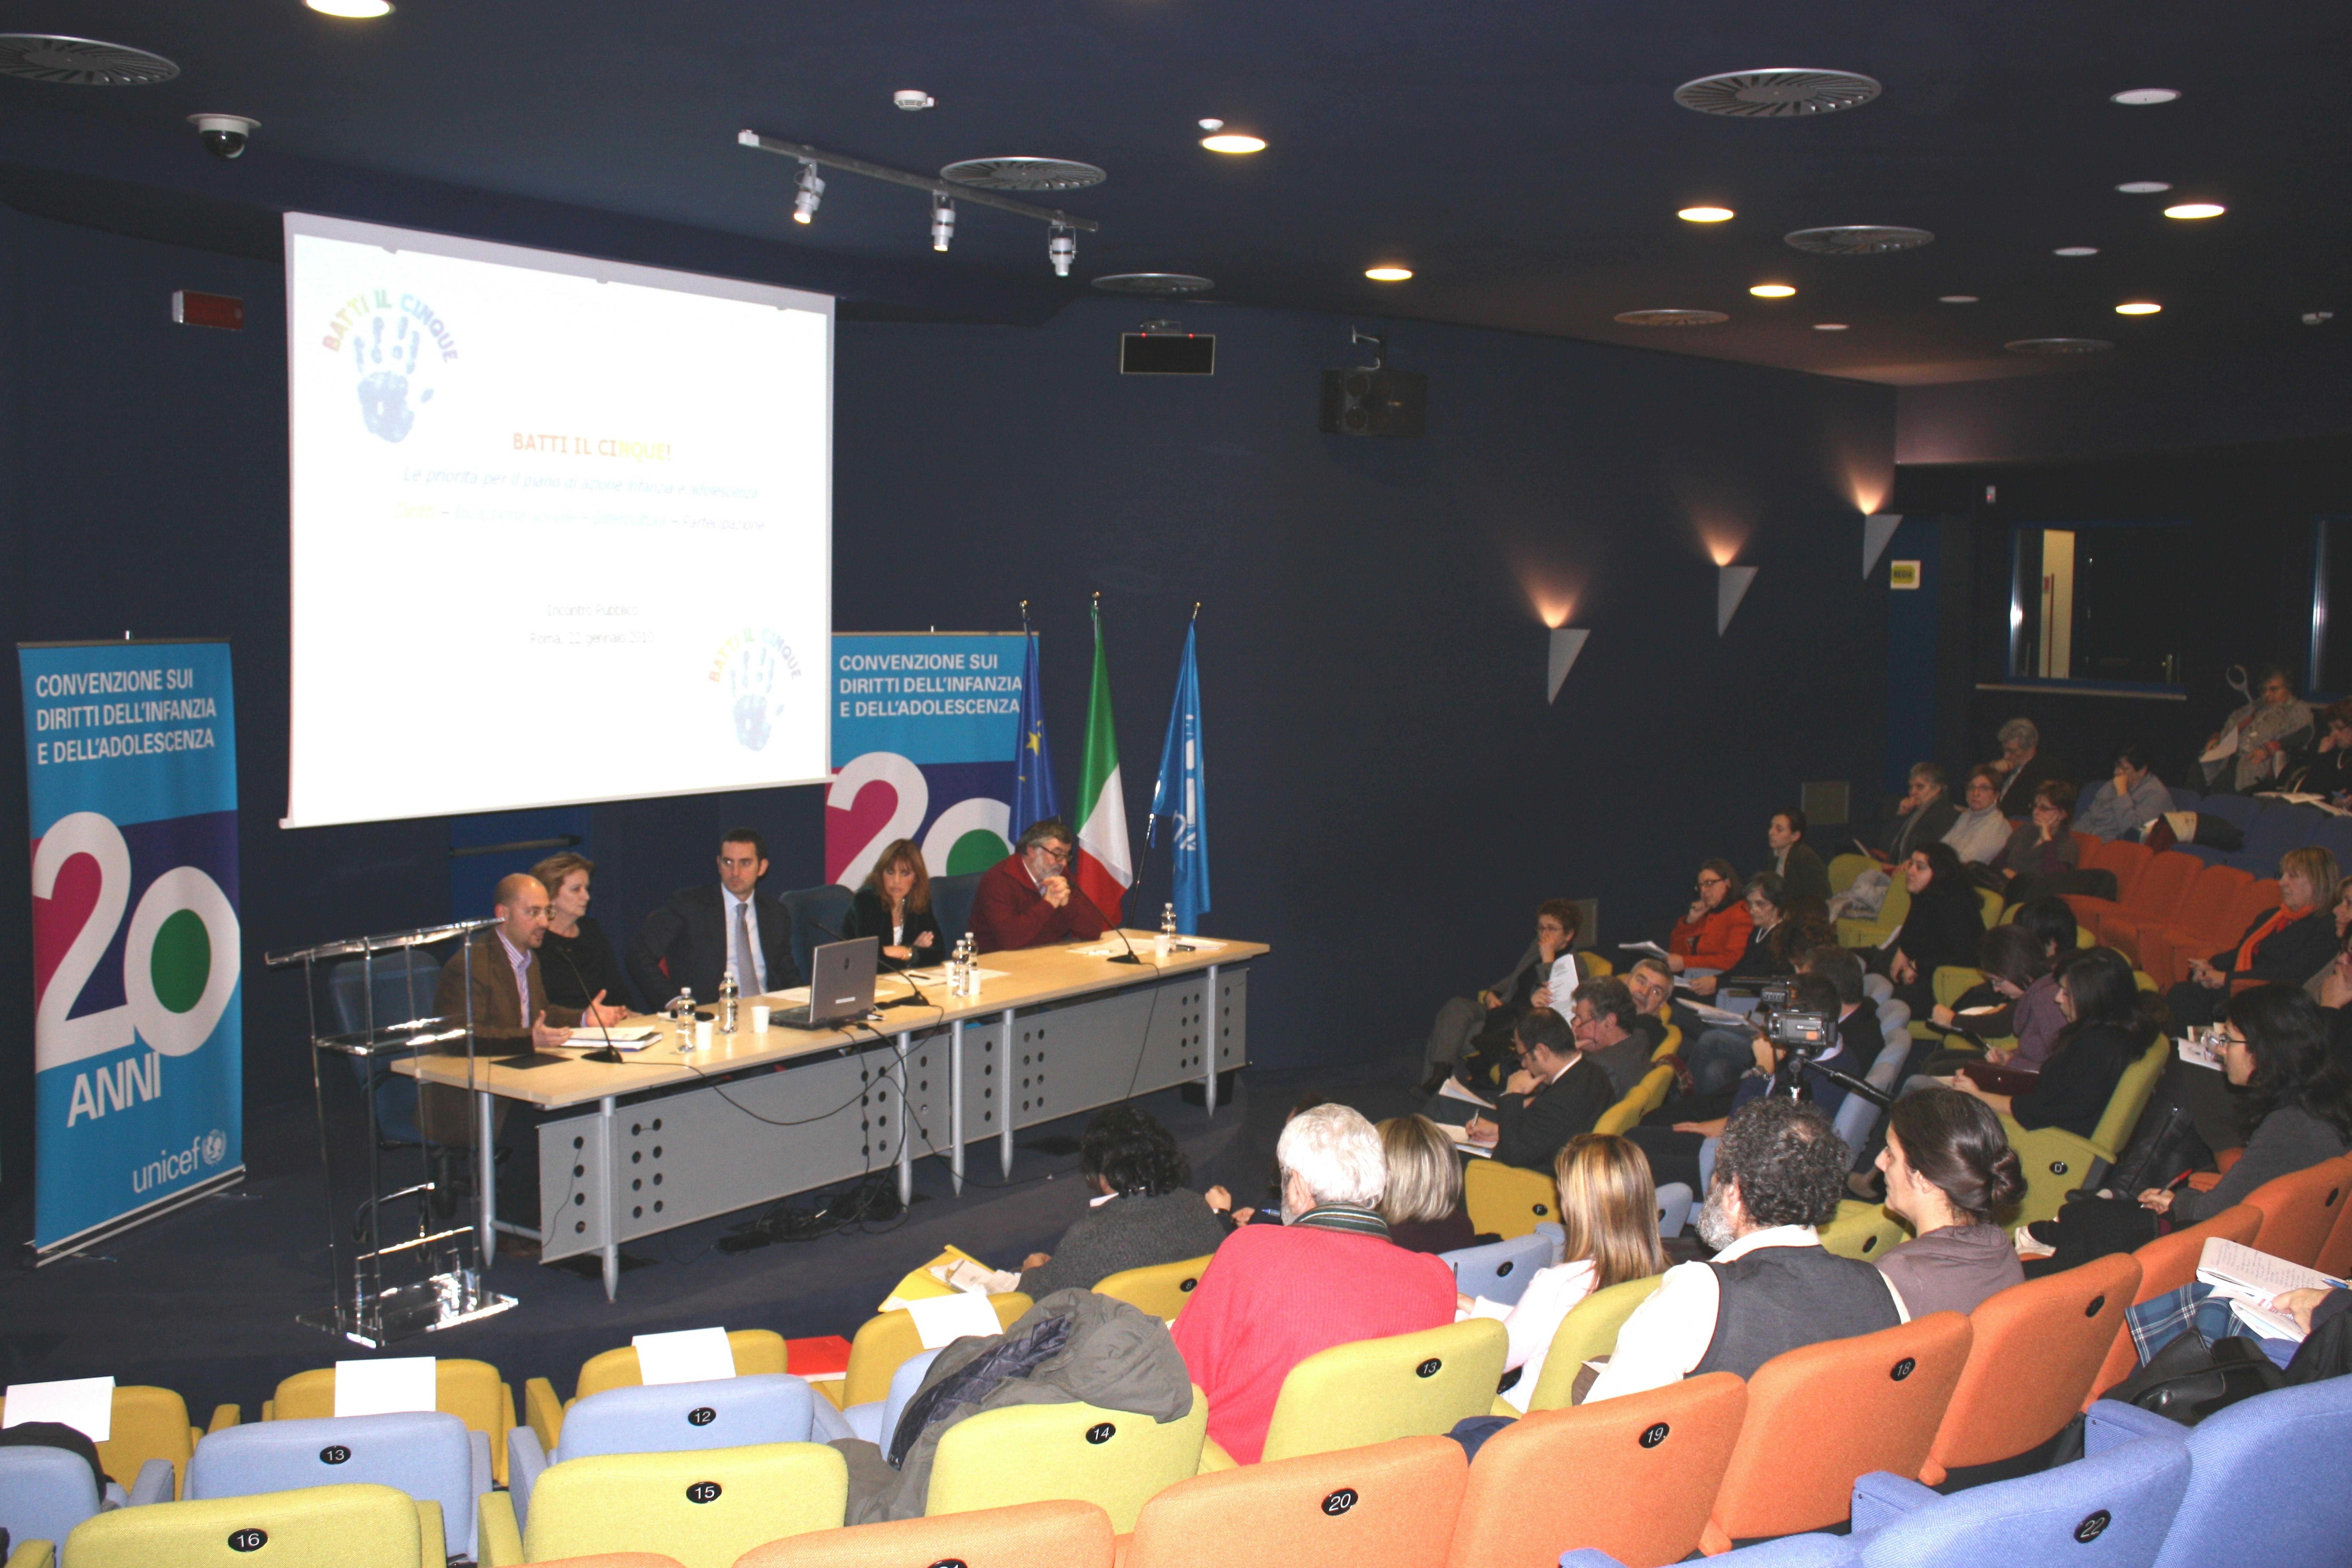 Un momento dell'assemblea delle associazioni promotrici del documento Batti il cinque, che si sono riunite il 22 gennaio a Roma ©UNICEF Italia/2010